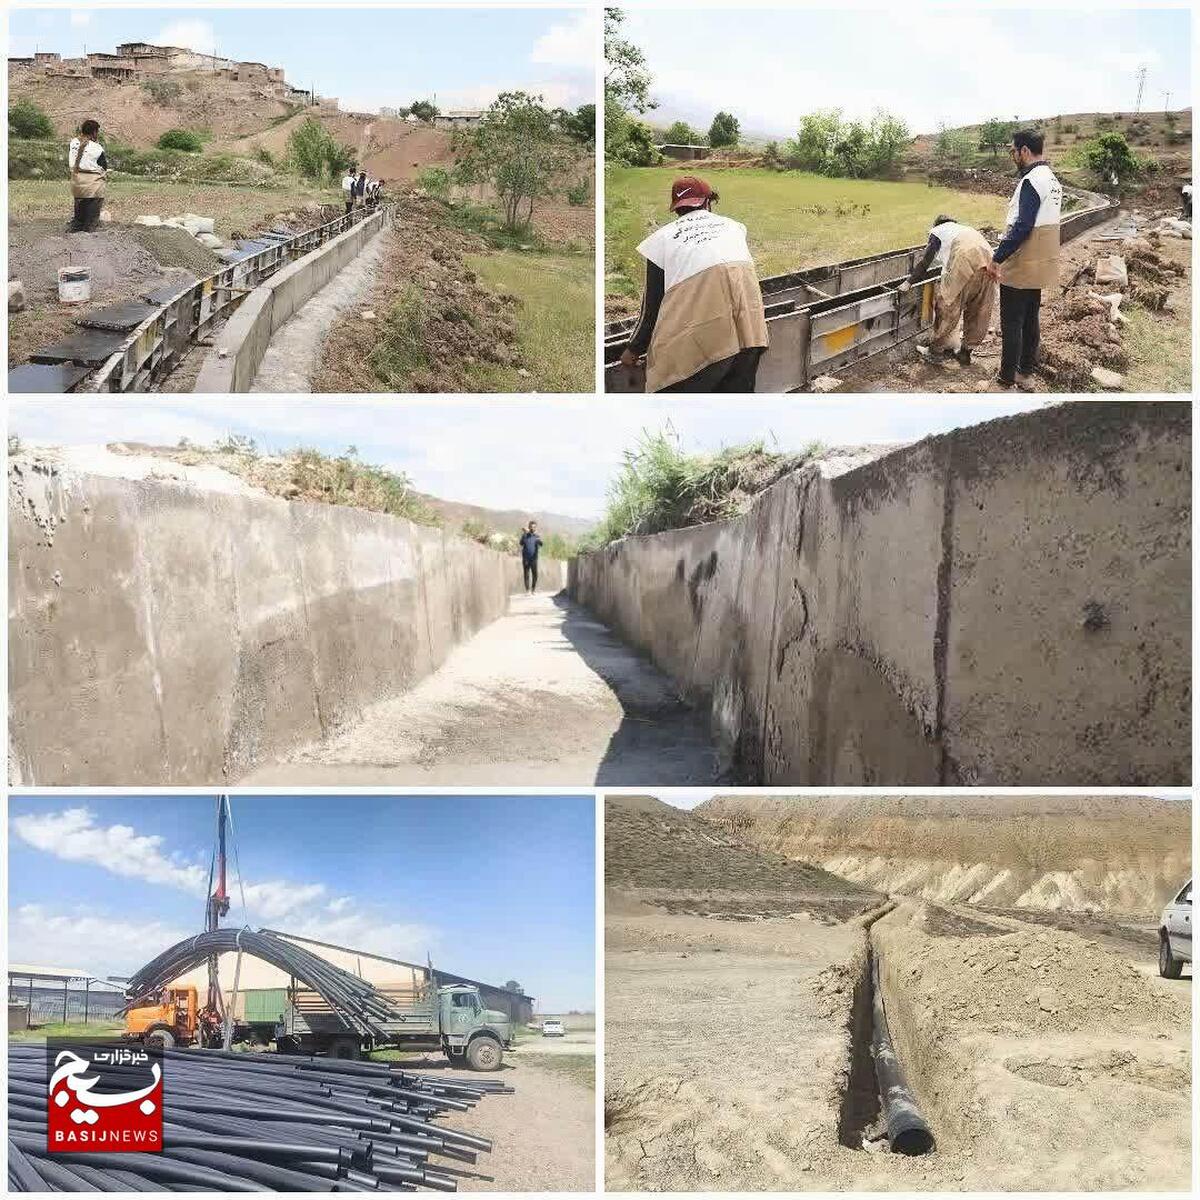 اجرای ۲۳ طرح آبخیز تا جالیز(عرصه های کشاورزی و آبخیزداری) در شهرستان قزوین توسط بسیج سازندگی